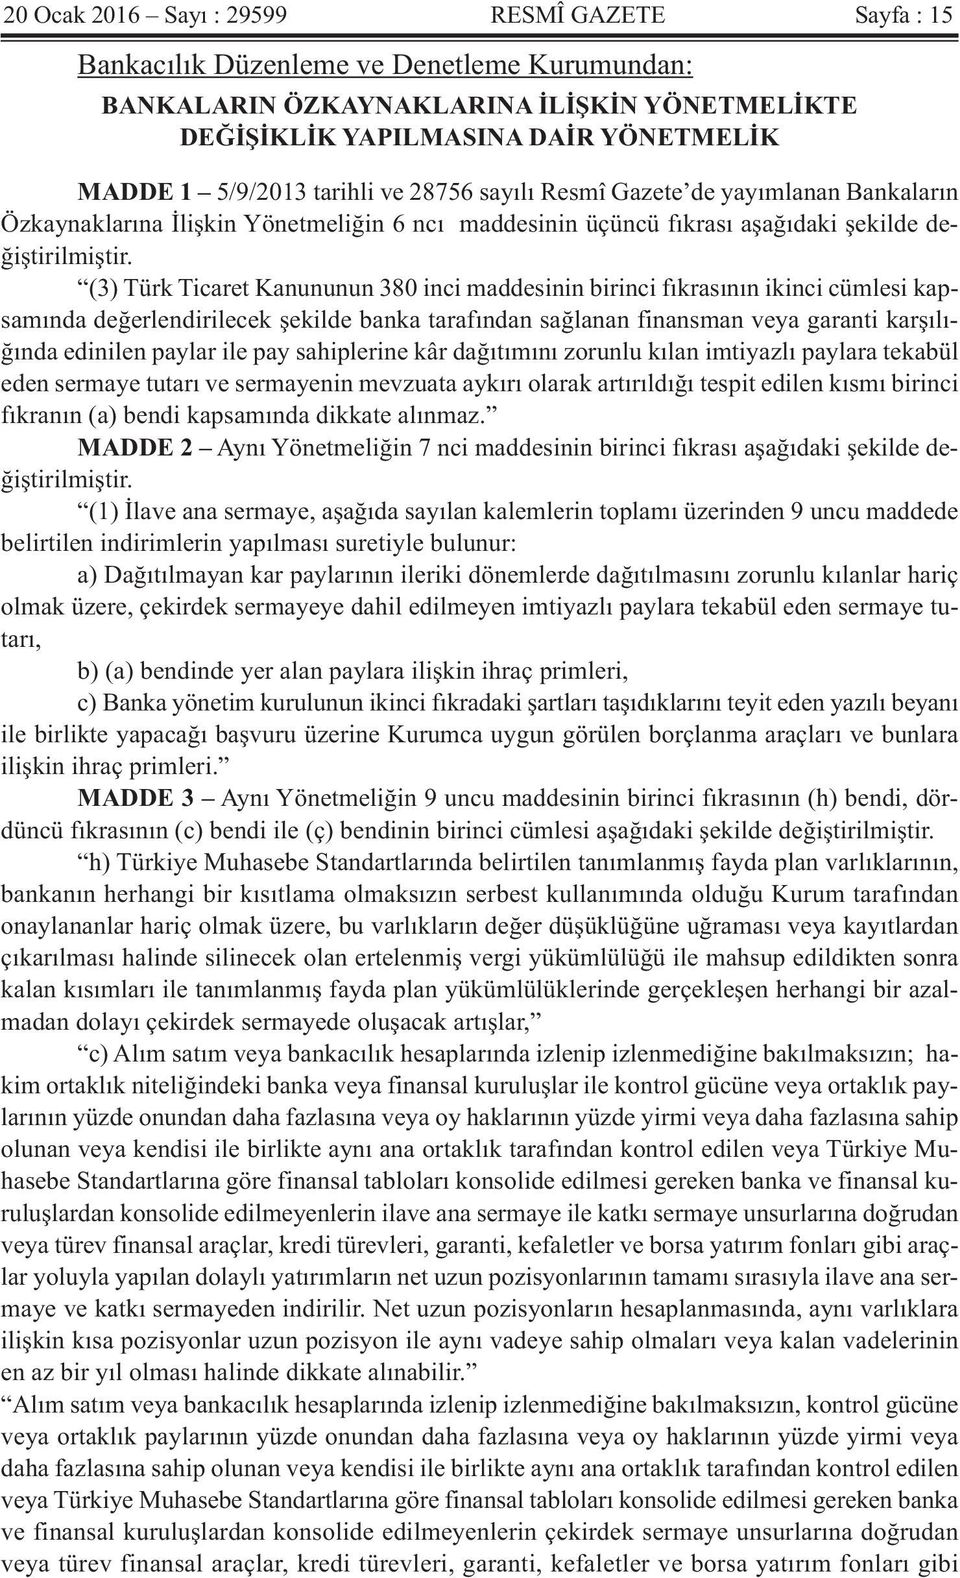 (3) Türk Ticaret Kanununun 380 inci maddesinin birinci fıkrasının ikinci cümlesi kapsamında değerlendirilecek şekilde banka tarafından sağlanan finansman veya garanti karşılığında edinilen paylar ile